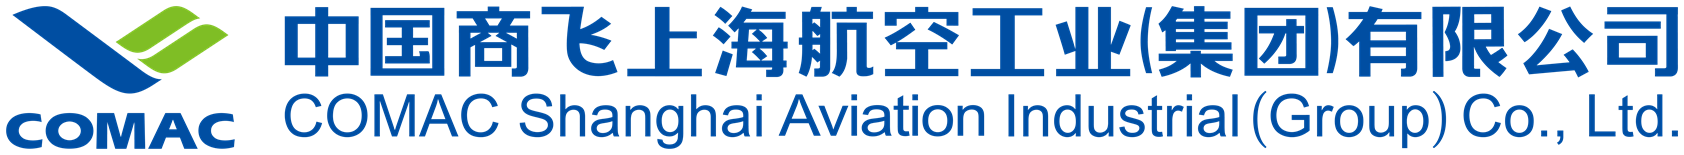 中國商飛上海航空工業(集團)有限公司-04.png